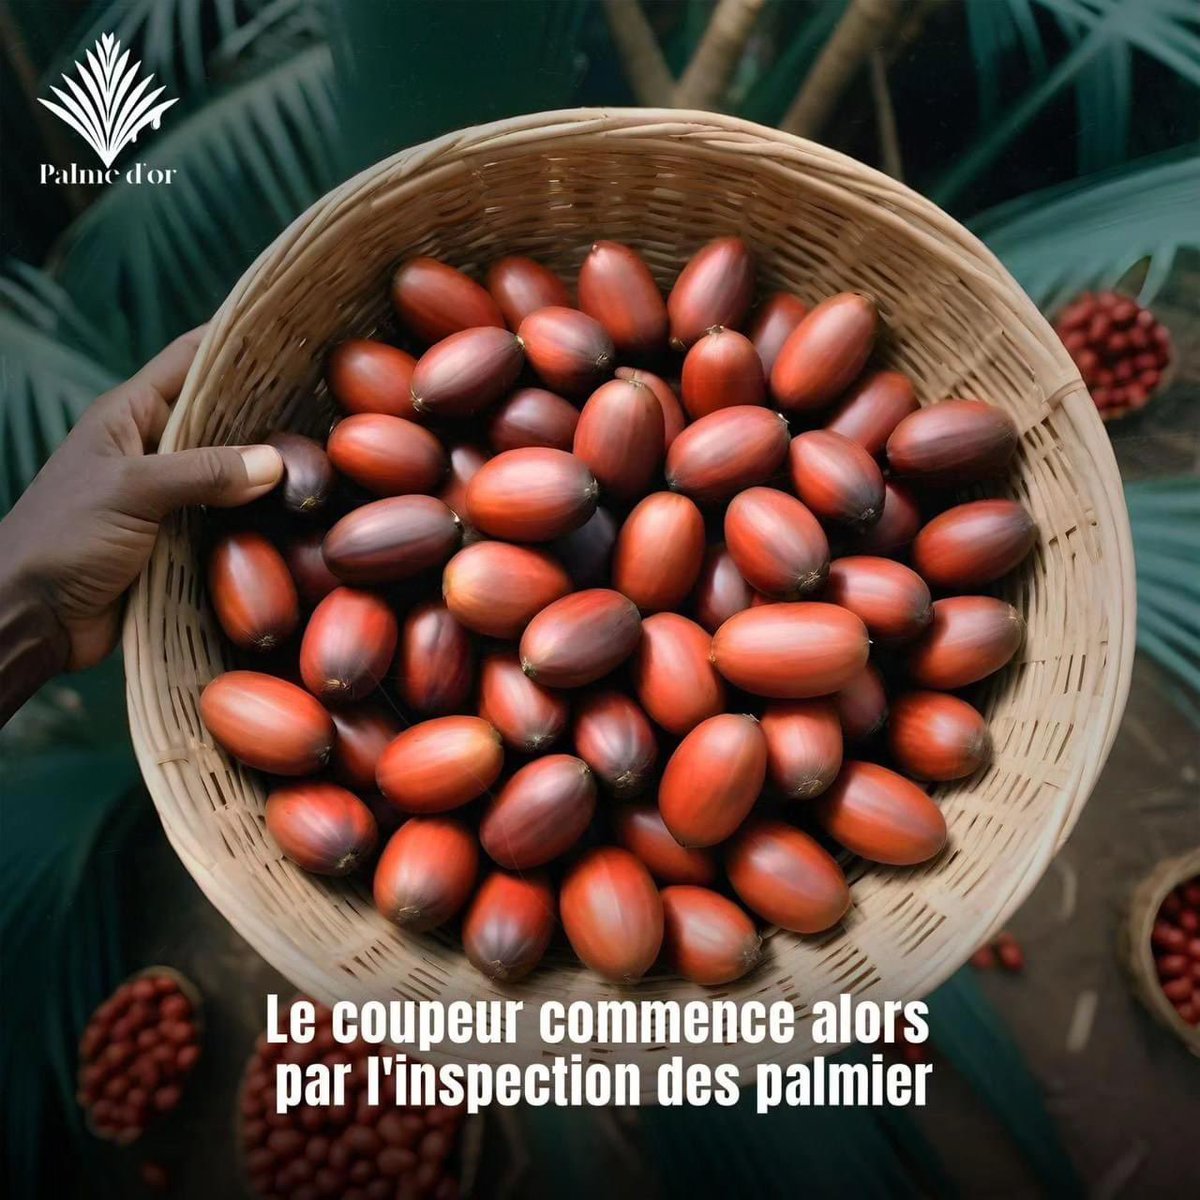 Le coupeur commence alors par l'inspection des palmier

#PalmeDor #palmoil #centrafrique